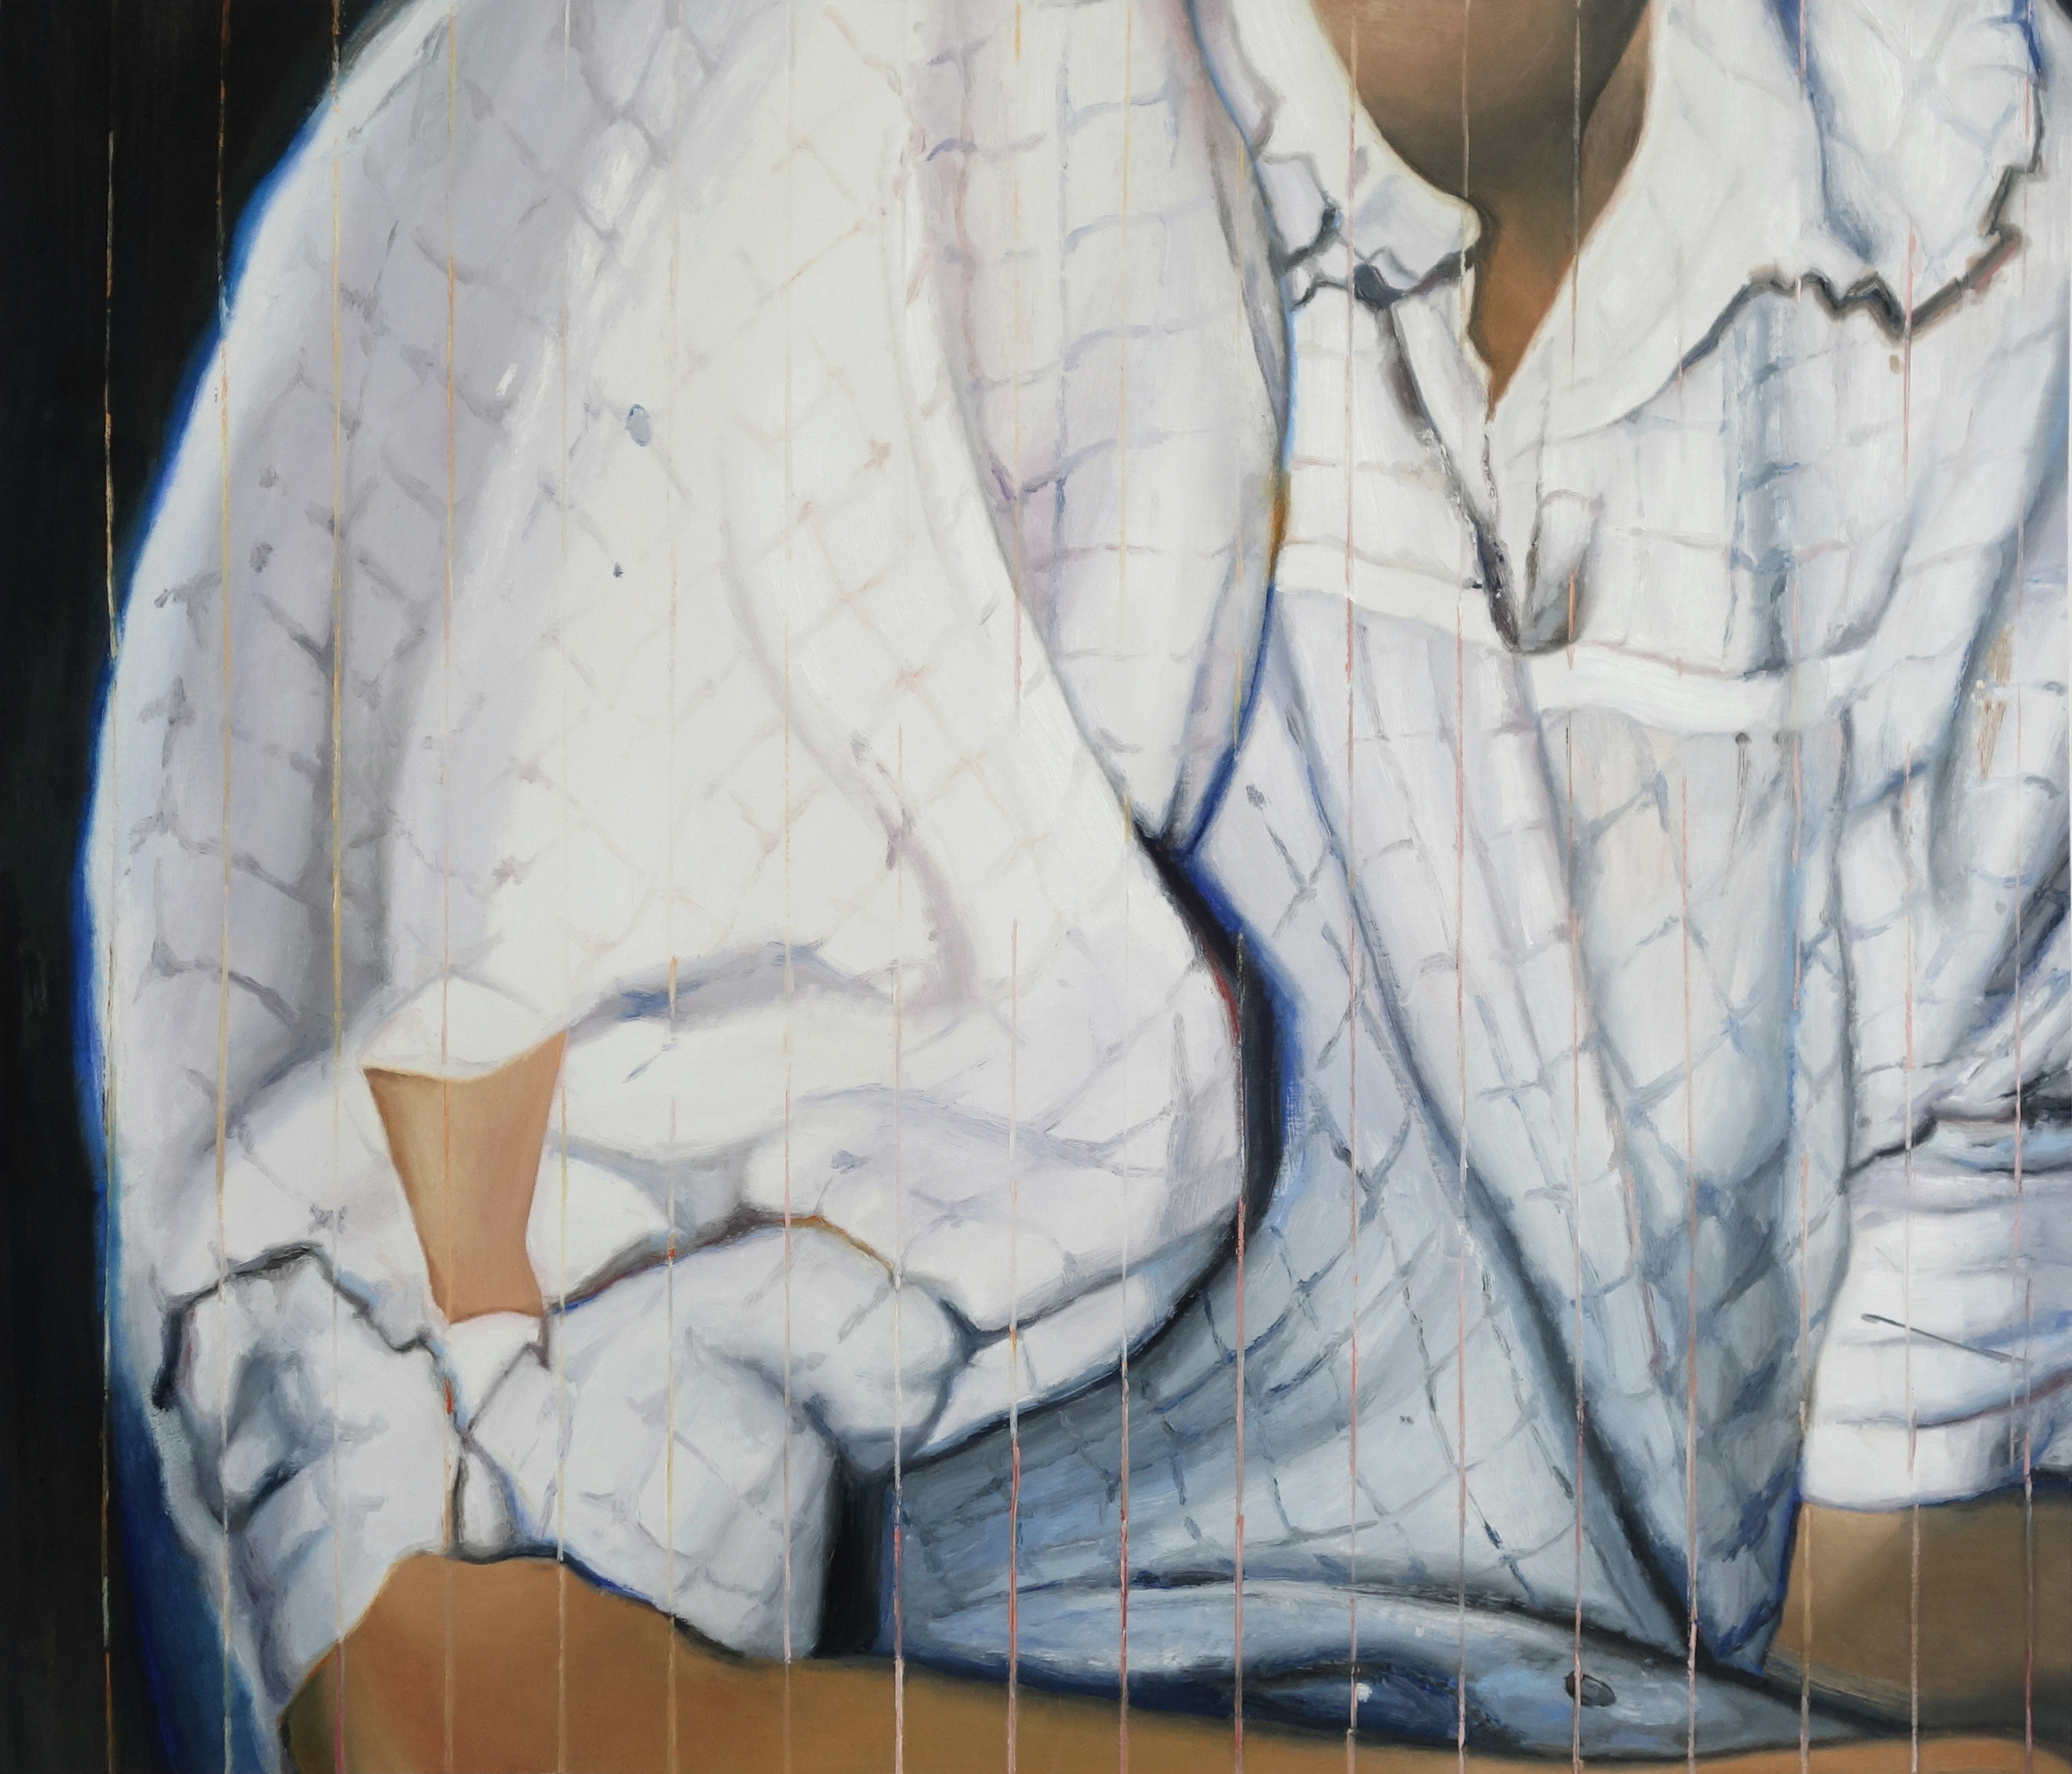 Chemisier, 2020, huile et spray sur toile, 95 x 110 cm / courtesy galerie Anne-Sarah Bénichou